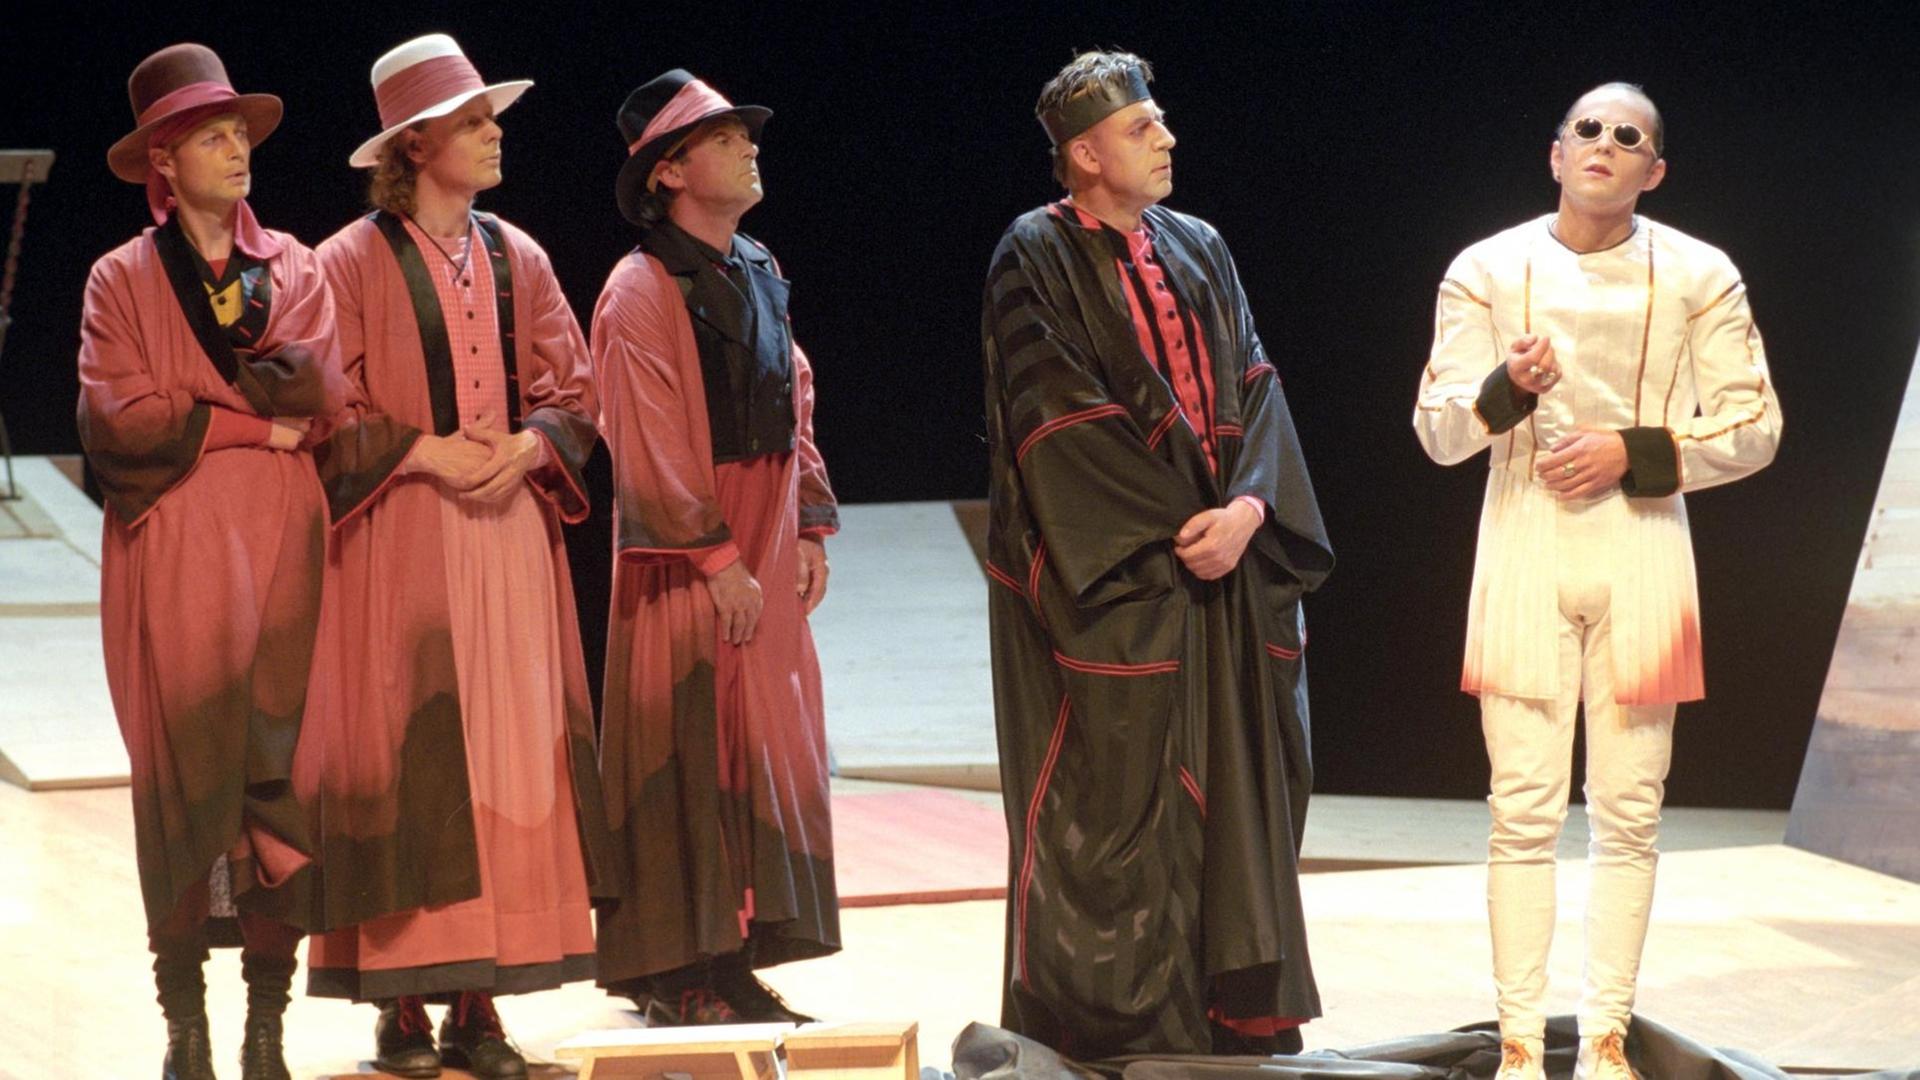 Die Schauspieler Kay Schulze, Thomas Bading, Jürgen Huth, Jörg Gudzuhn und Guntram Brattia (v.l.) bei einer Aufführung von "König Ödipus" im Deutschen Theater Berlin.